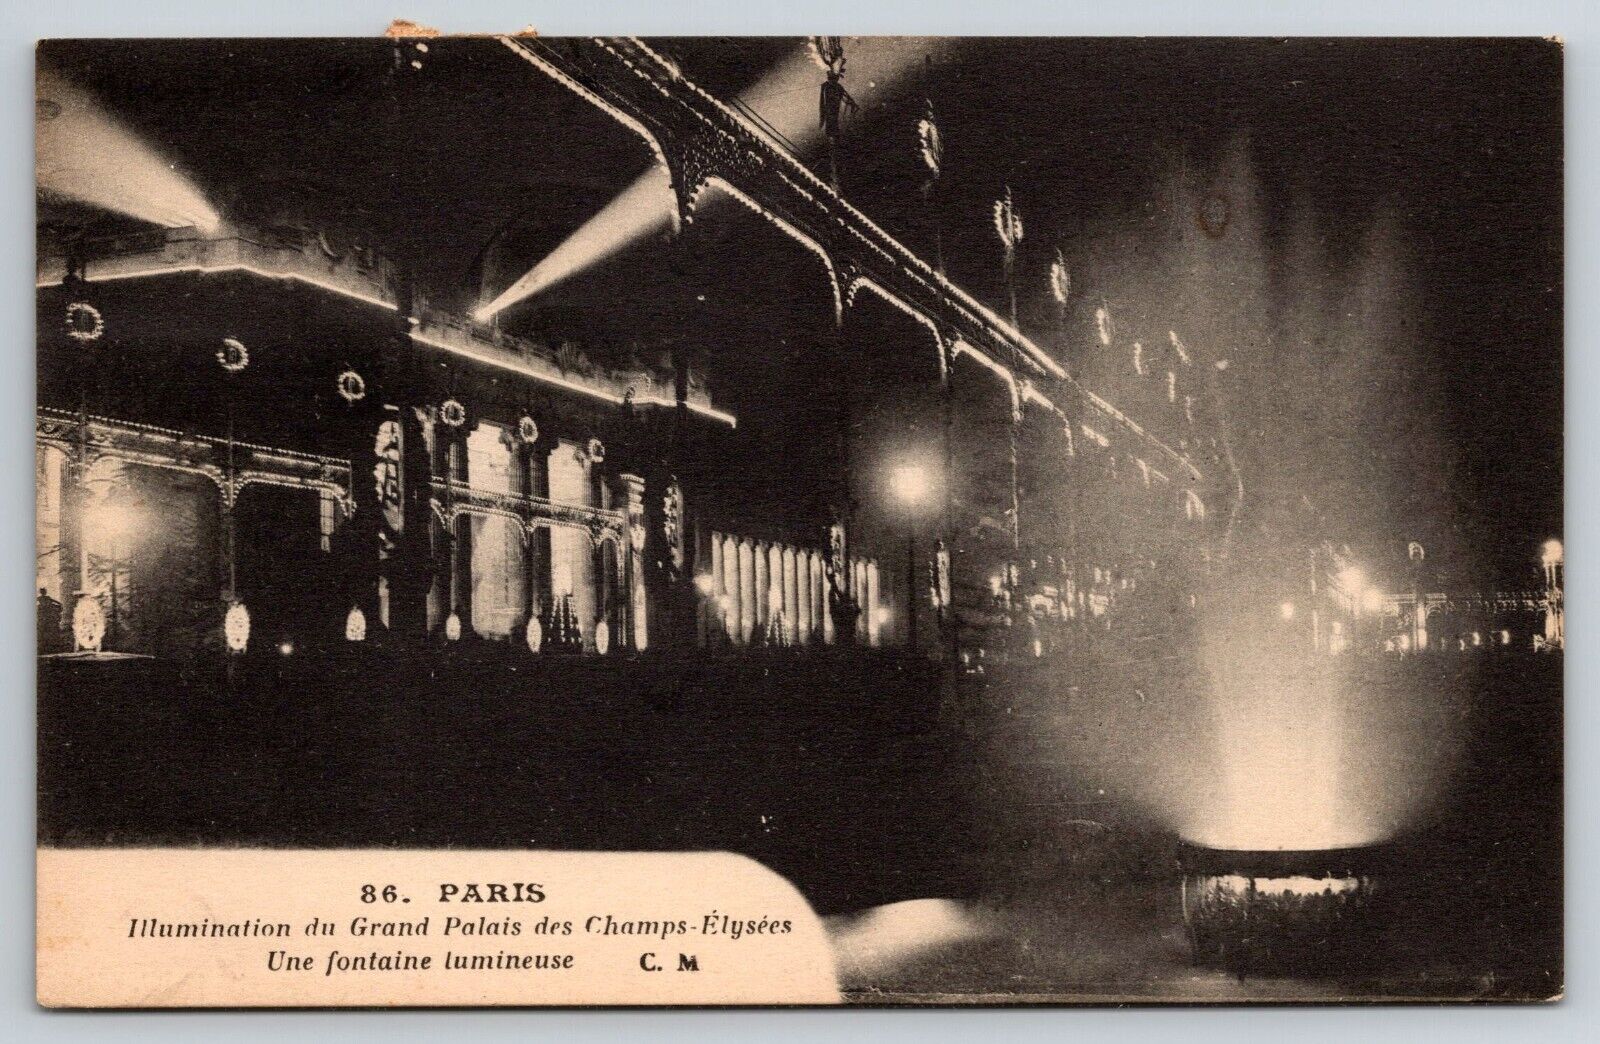 Le Grand Palais des Champs-Elysees, Paris, France c1930s Postcard PAR007